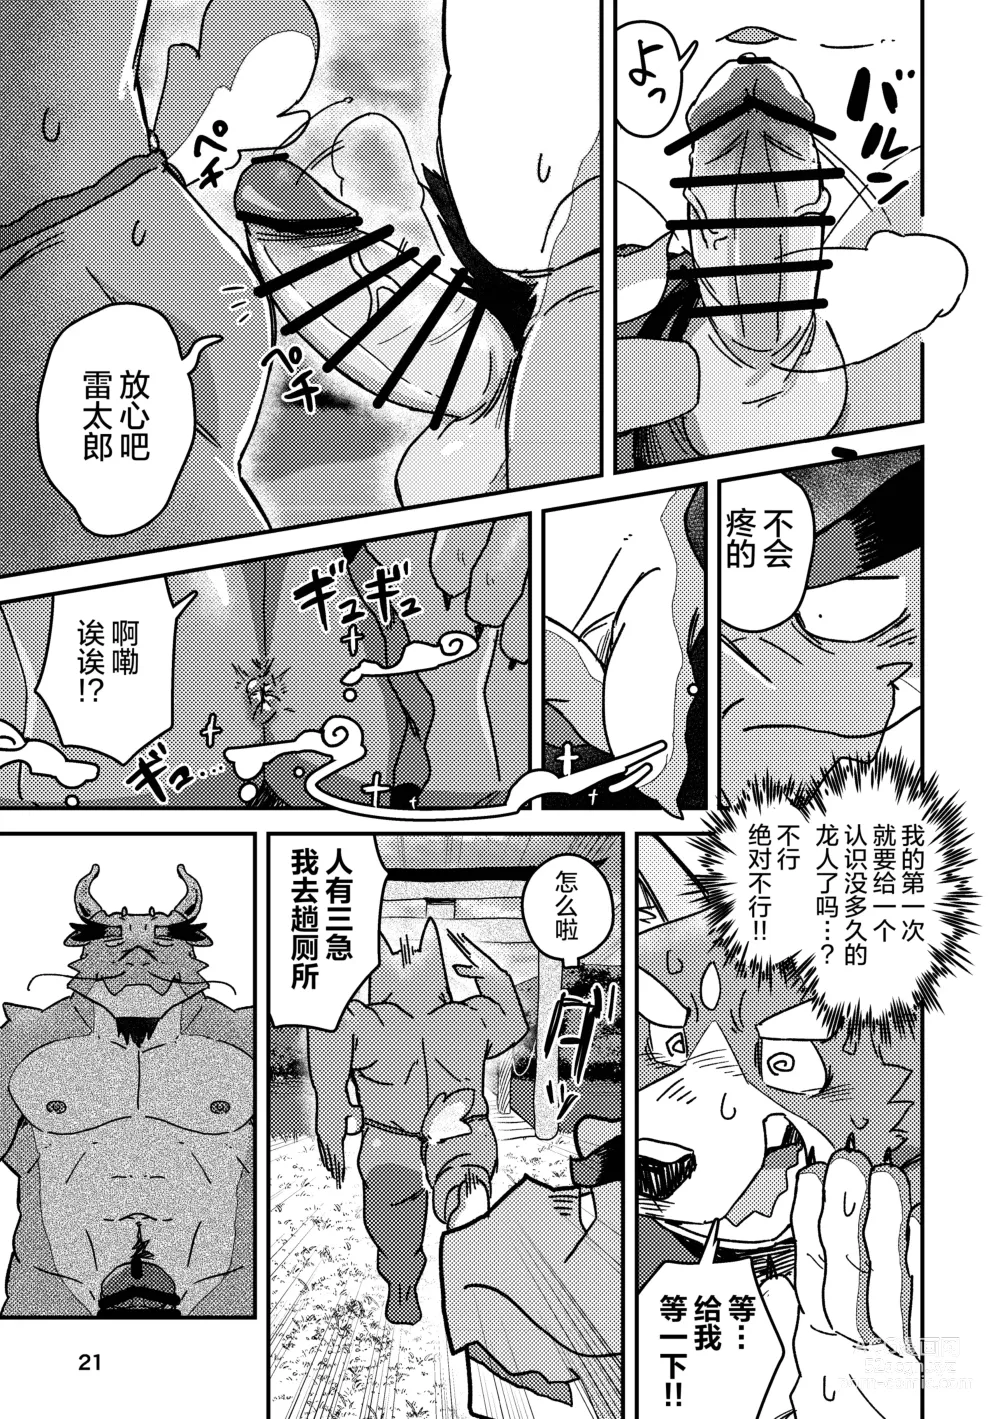 Page 21 of doujinshi 约定的龙穴